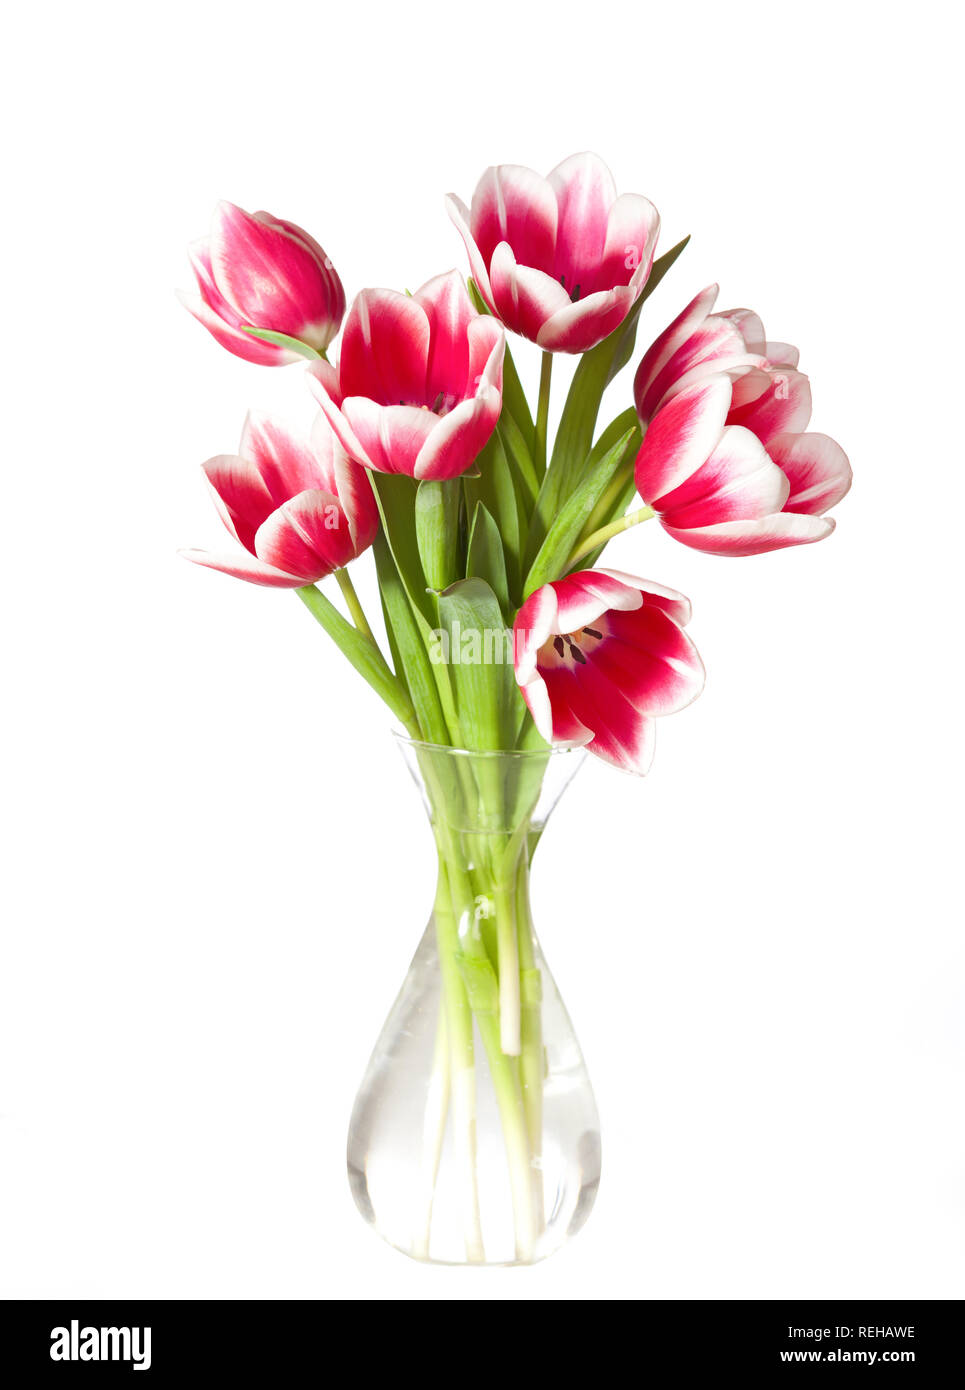 Tulipes roses et blanches dans le vase transparent isolé sur blanc. Banque D'Images